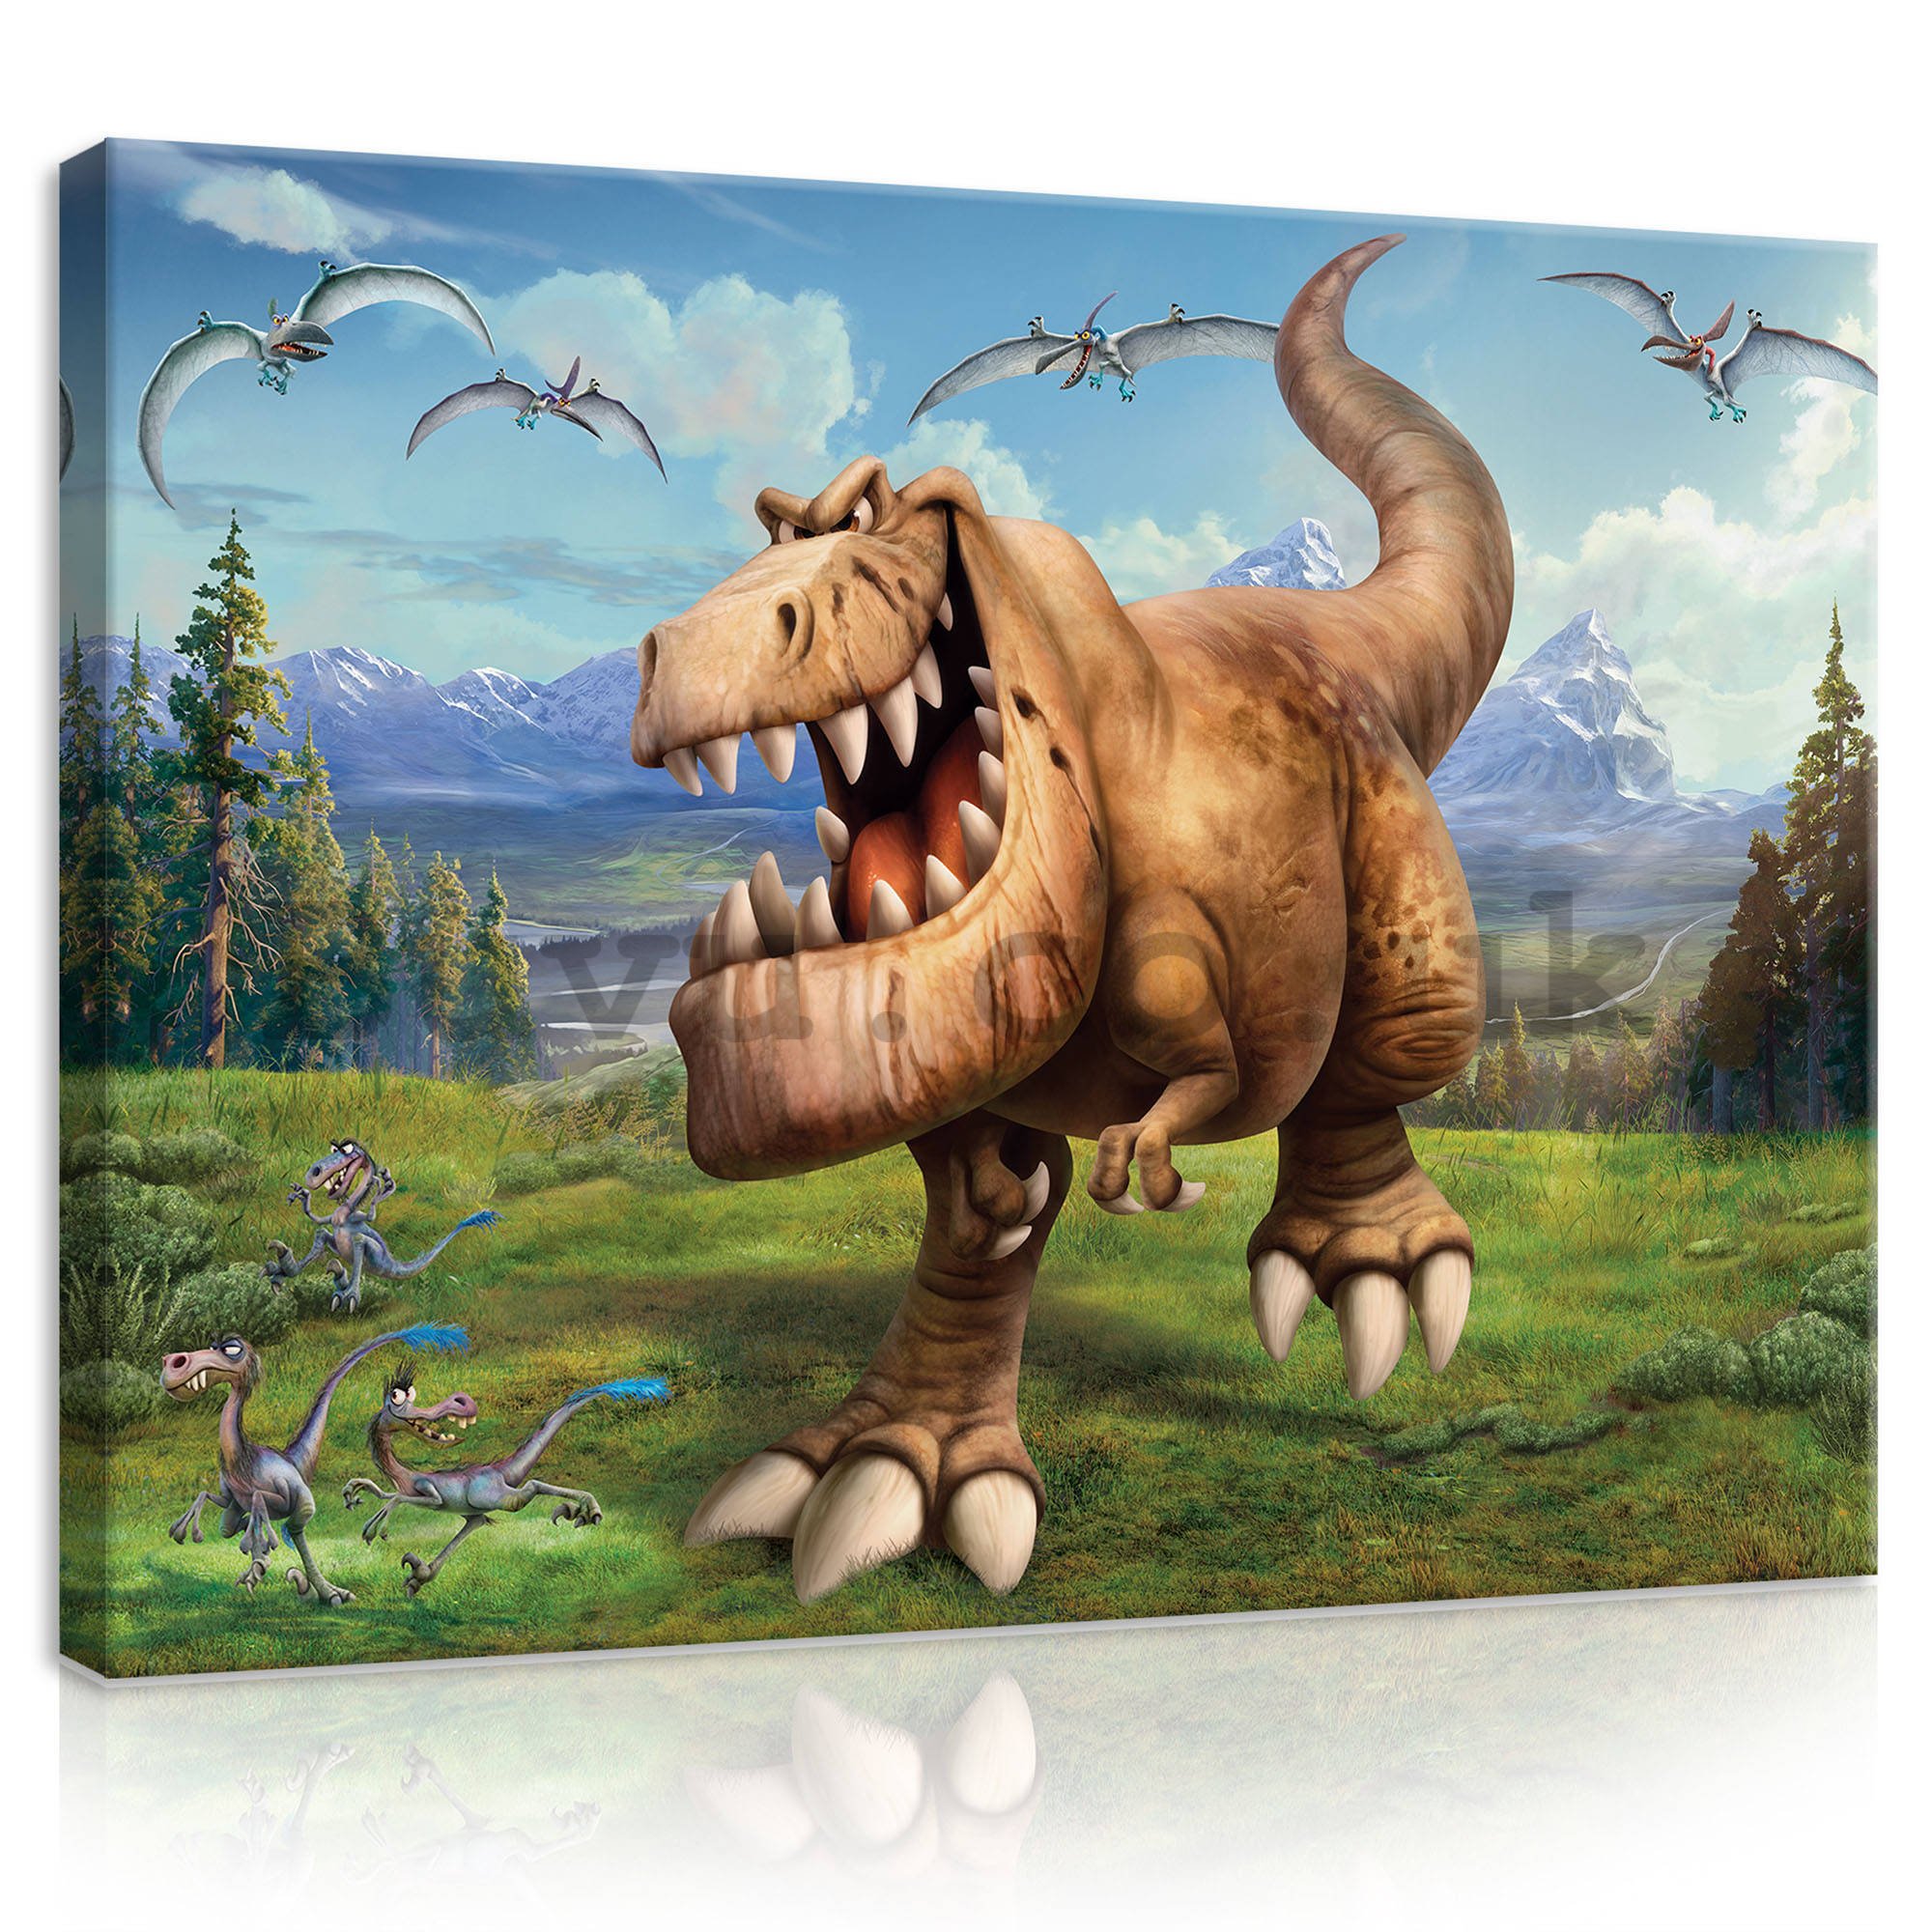 Painting on canvas: The Good Dinosaur Butch (5) - 100x75 cm